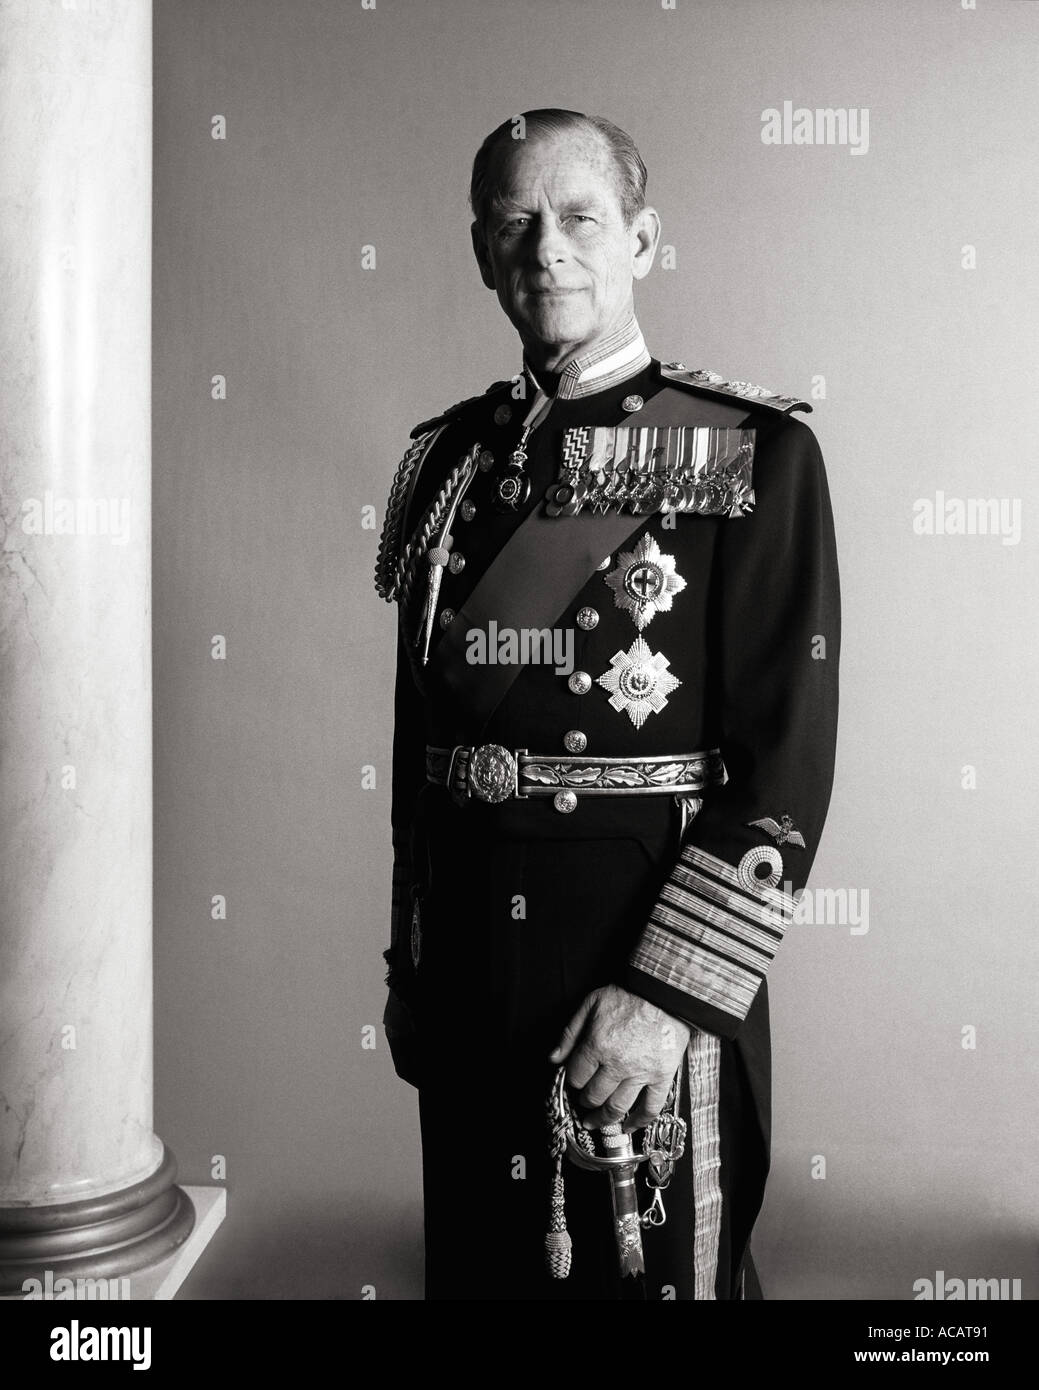 El príncipe Felipe, Duque de Edimburgo retrato oficial en uniforme Naval Real del Palacio de Buckingham 1985 Foto de stock